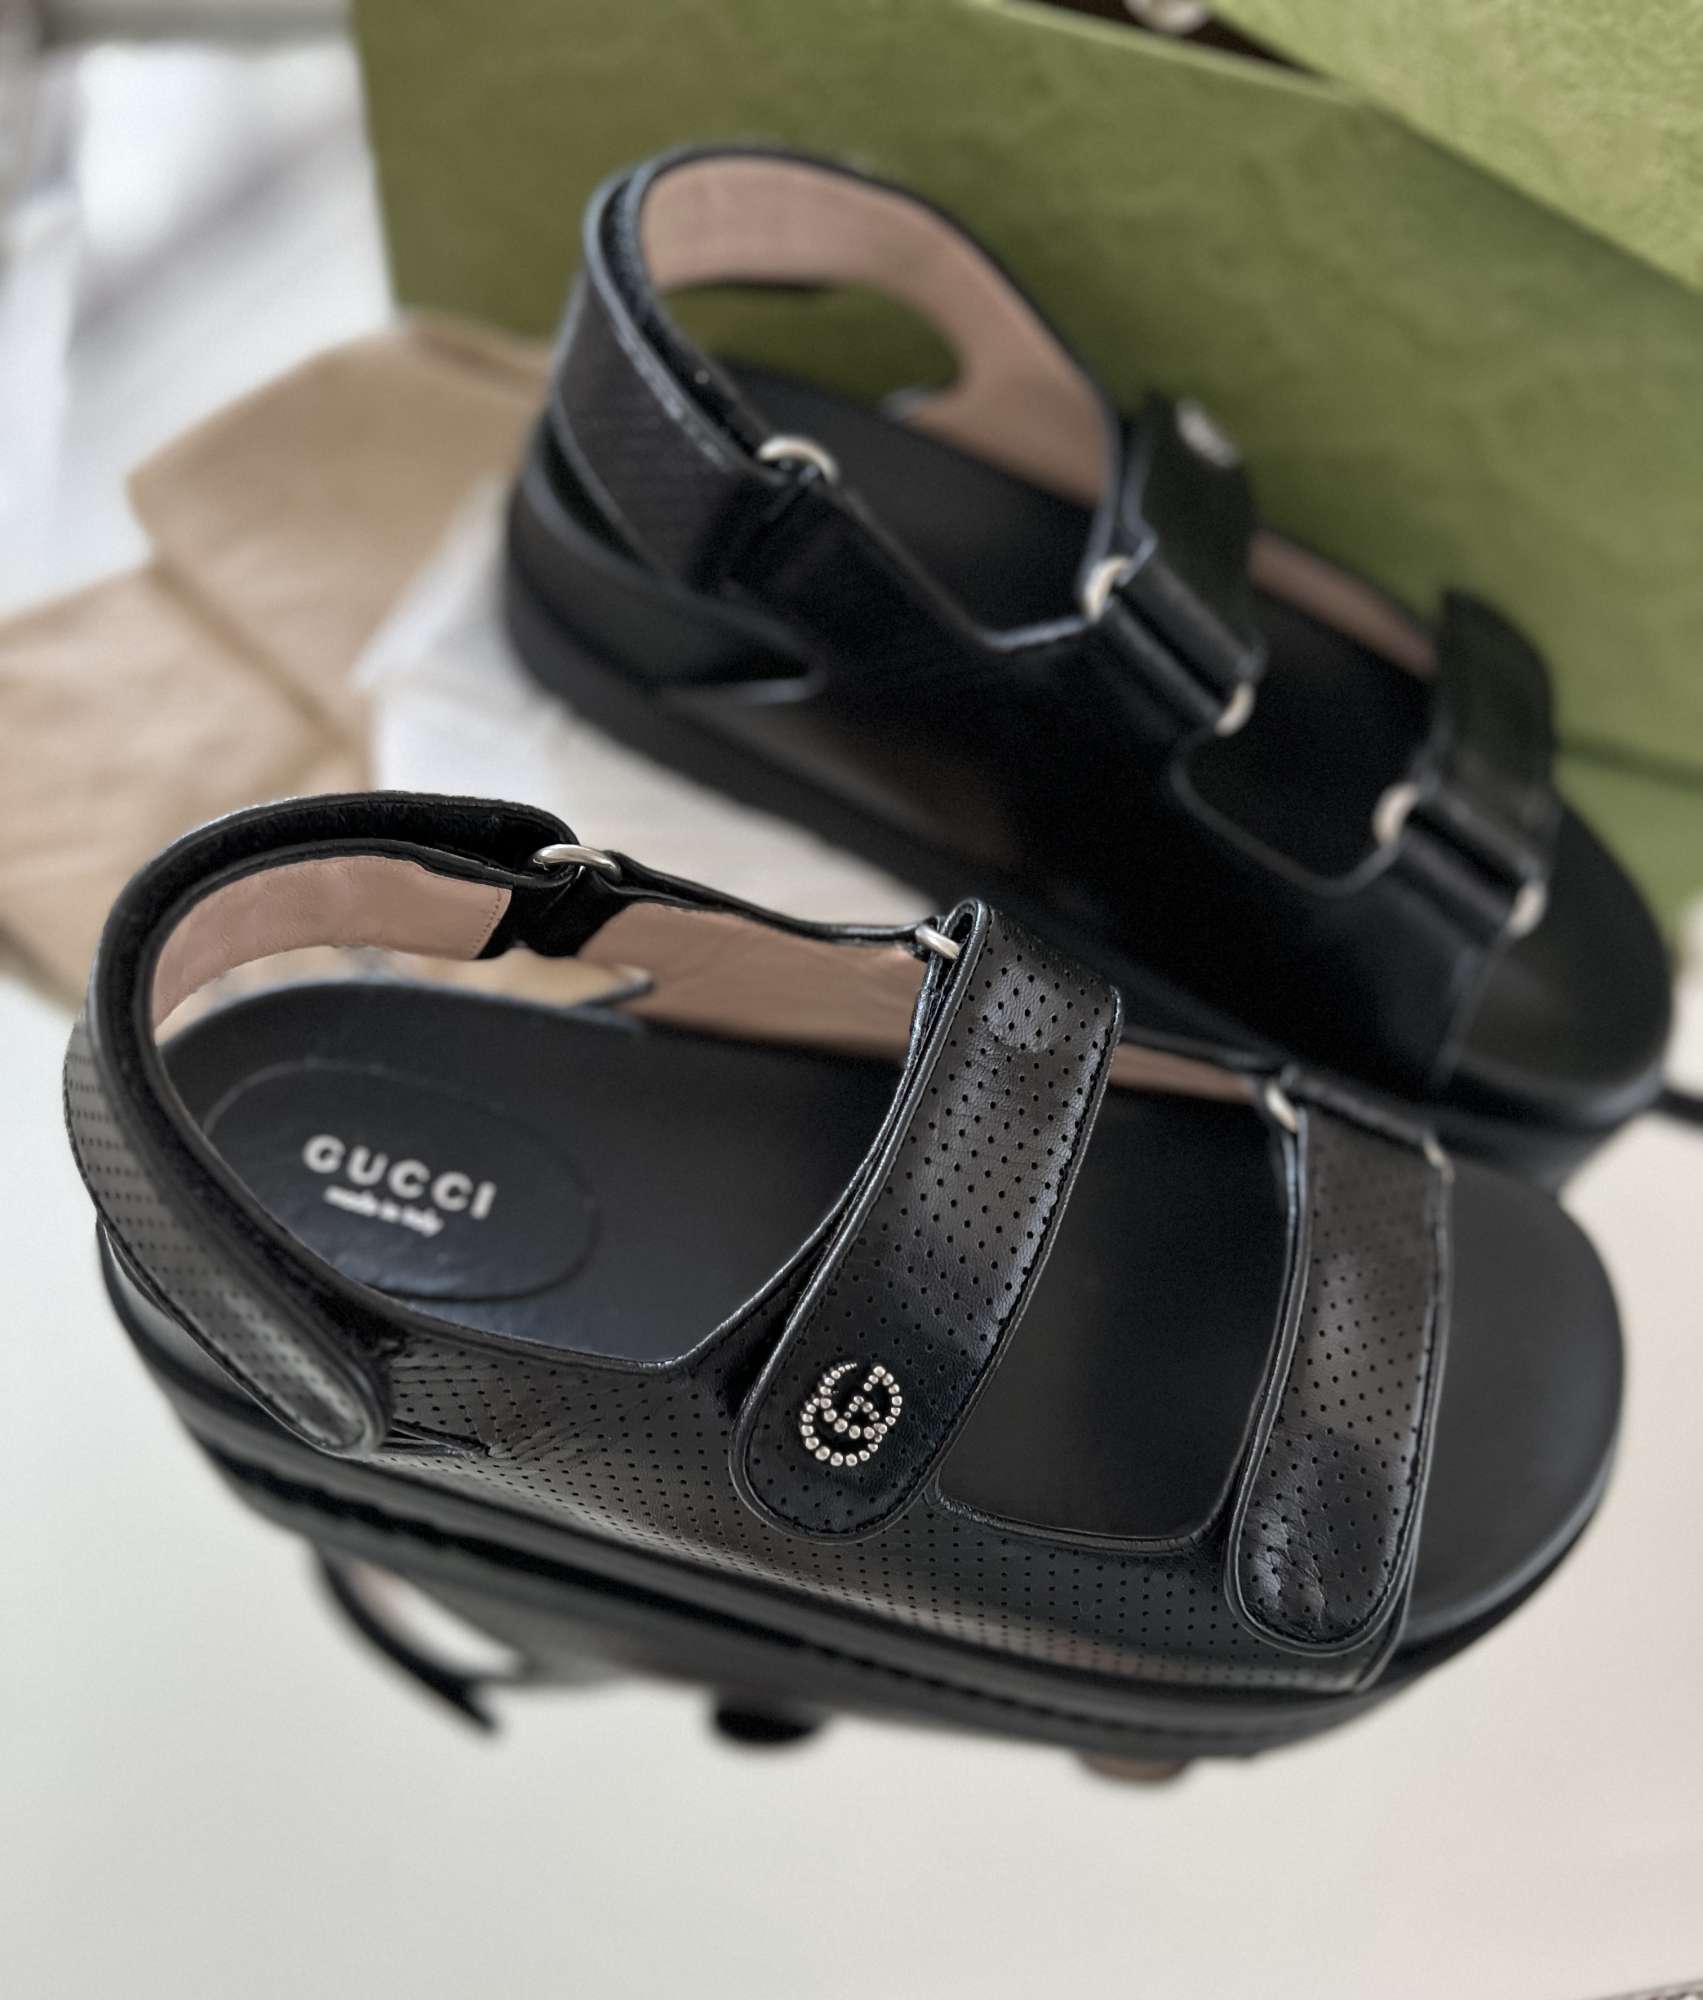 Gucci damske kozene sandale velkost 39